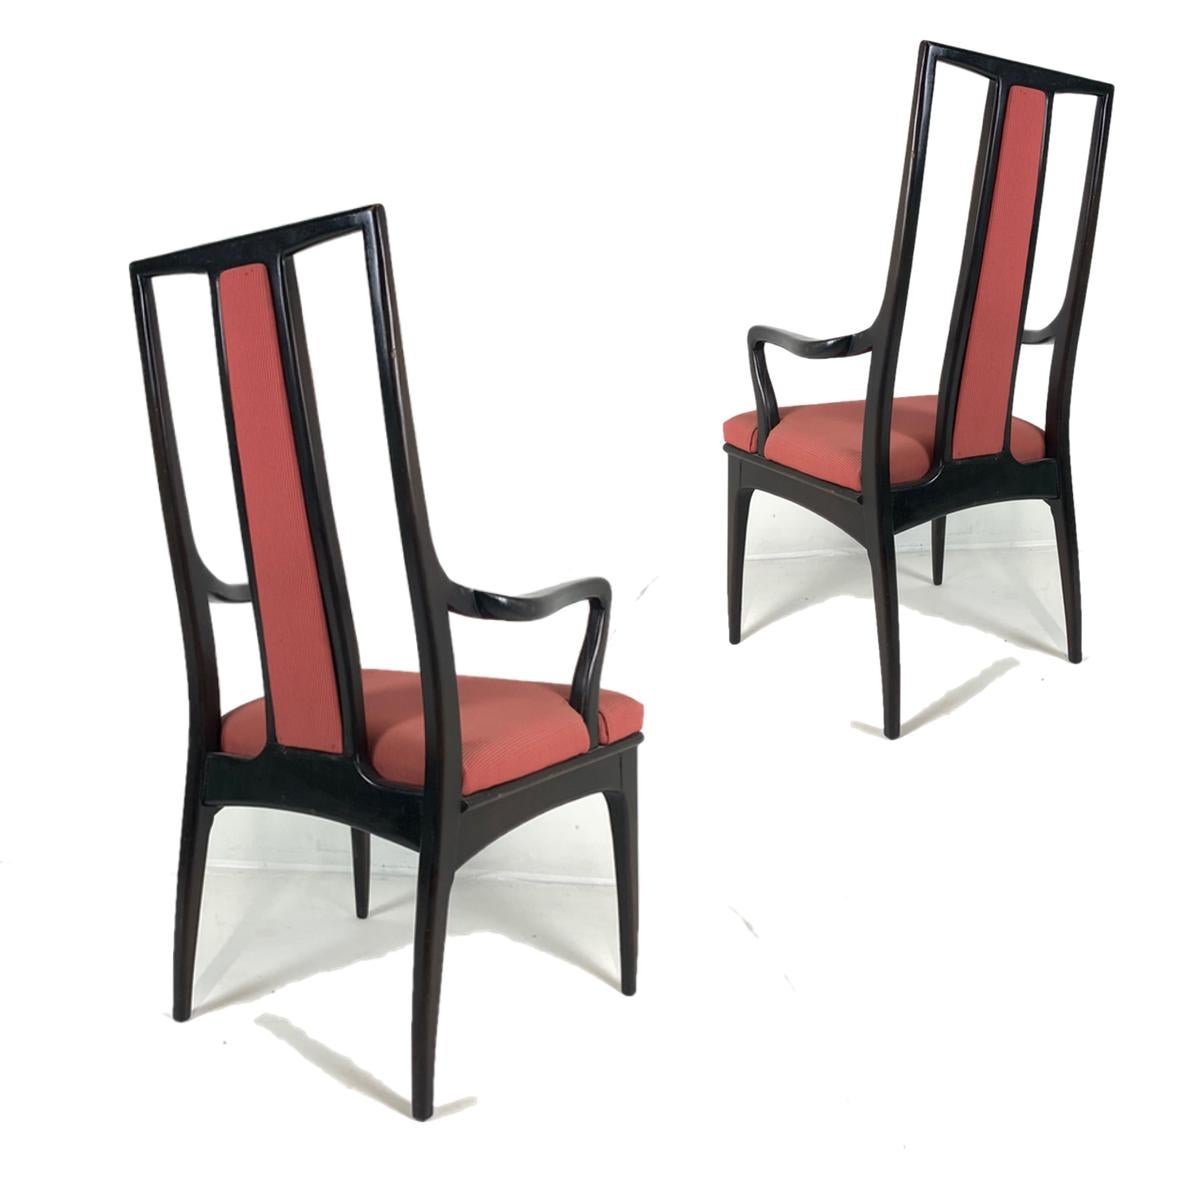 Une élégante paire de fauteuils John Stuart qui peuvent être utilisés comme chaises de salle à manger ou d'appoint. Ils ont la finition originale en acajou foncé presque ébène et le tissu original en bon état. Les deux chaises sont étiquetées John